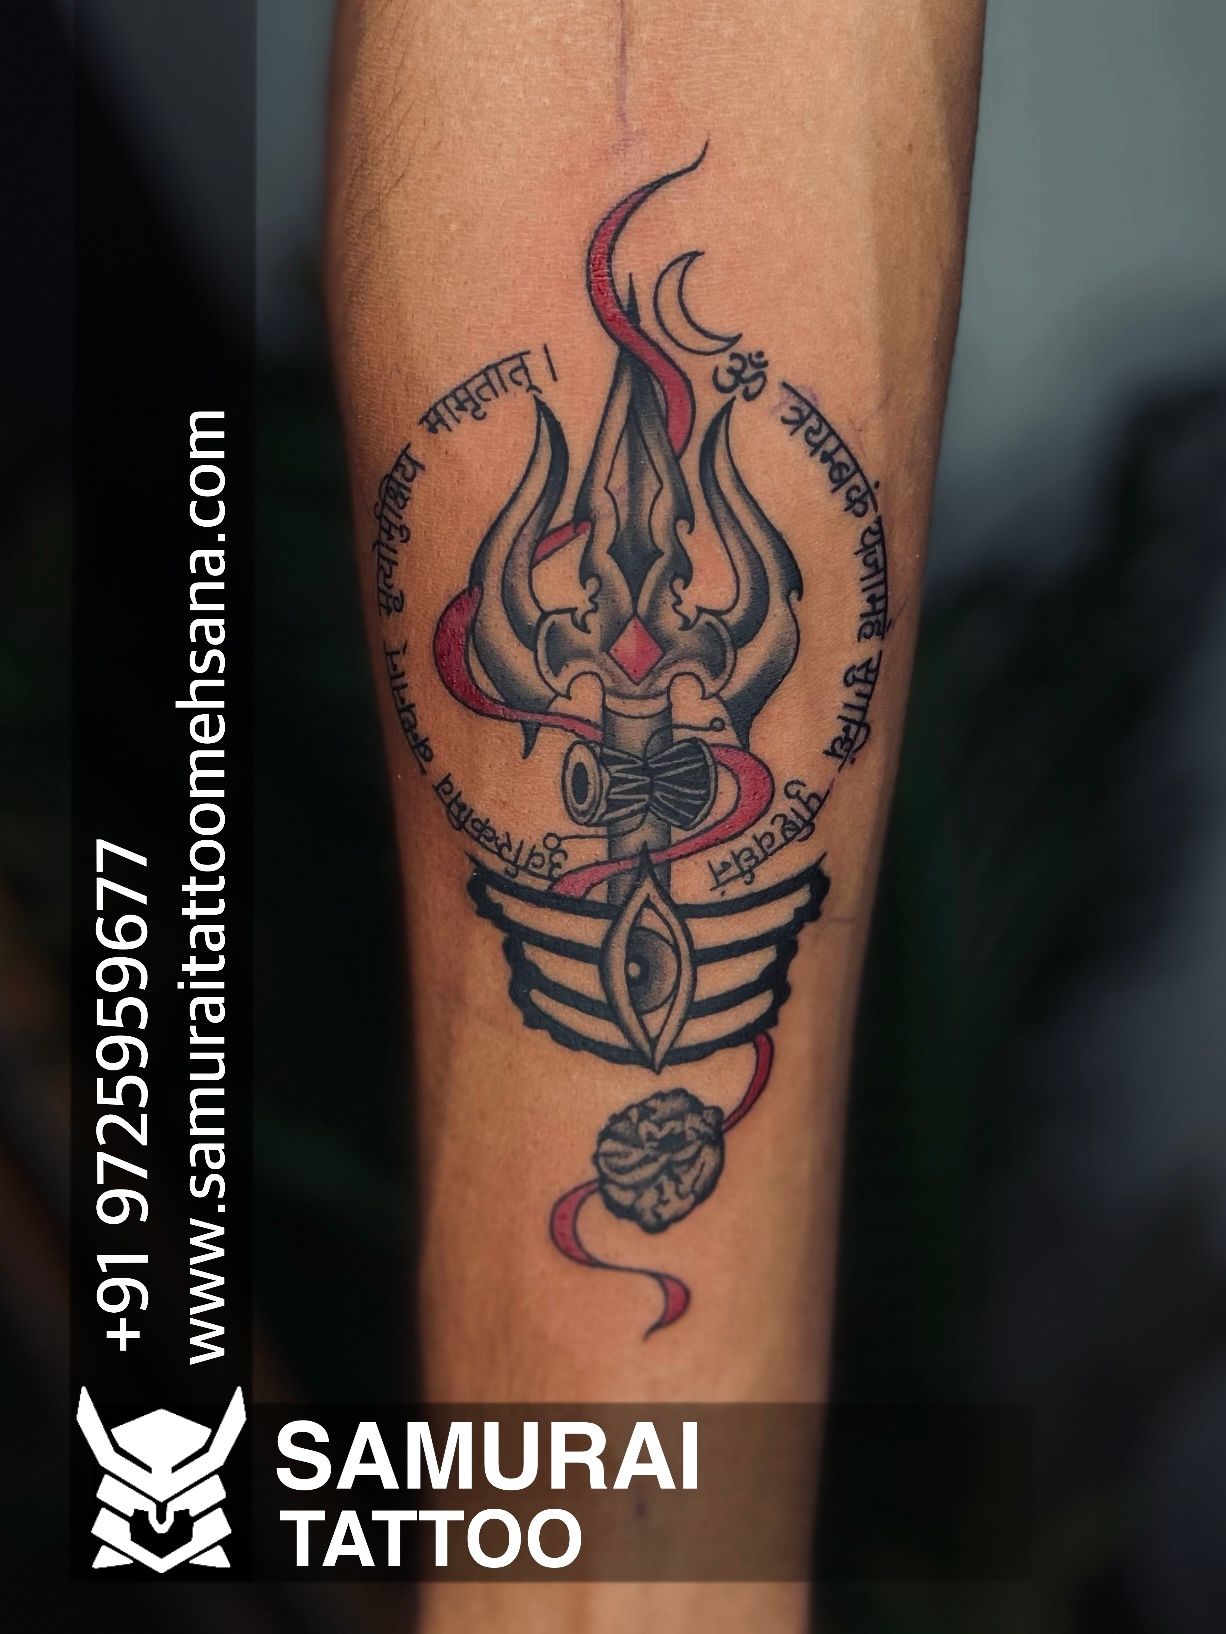 TRISHUL TATTOOS | Trishul tattoo designs, Om tattoo design, Shiva tattoo  design